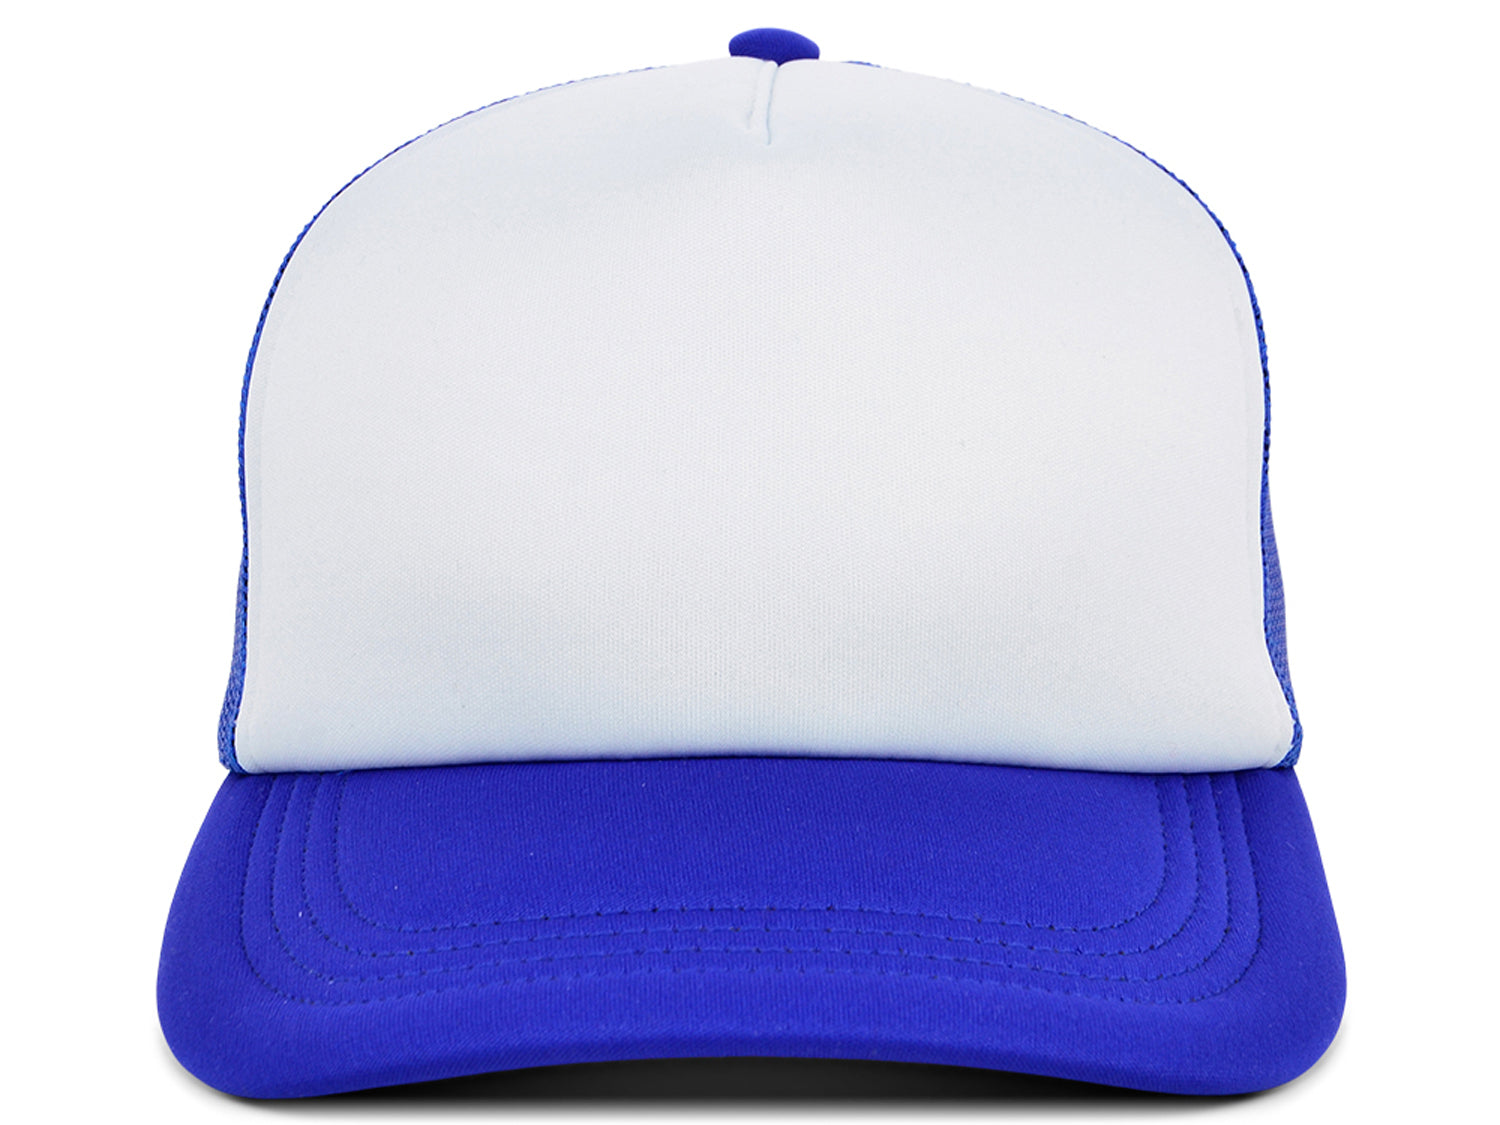 lids hats blue